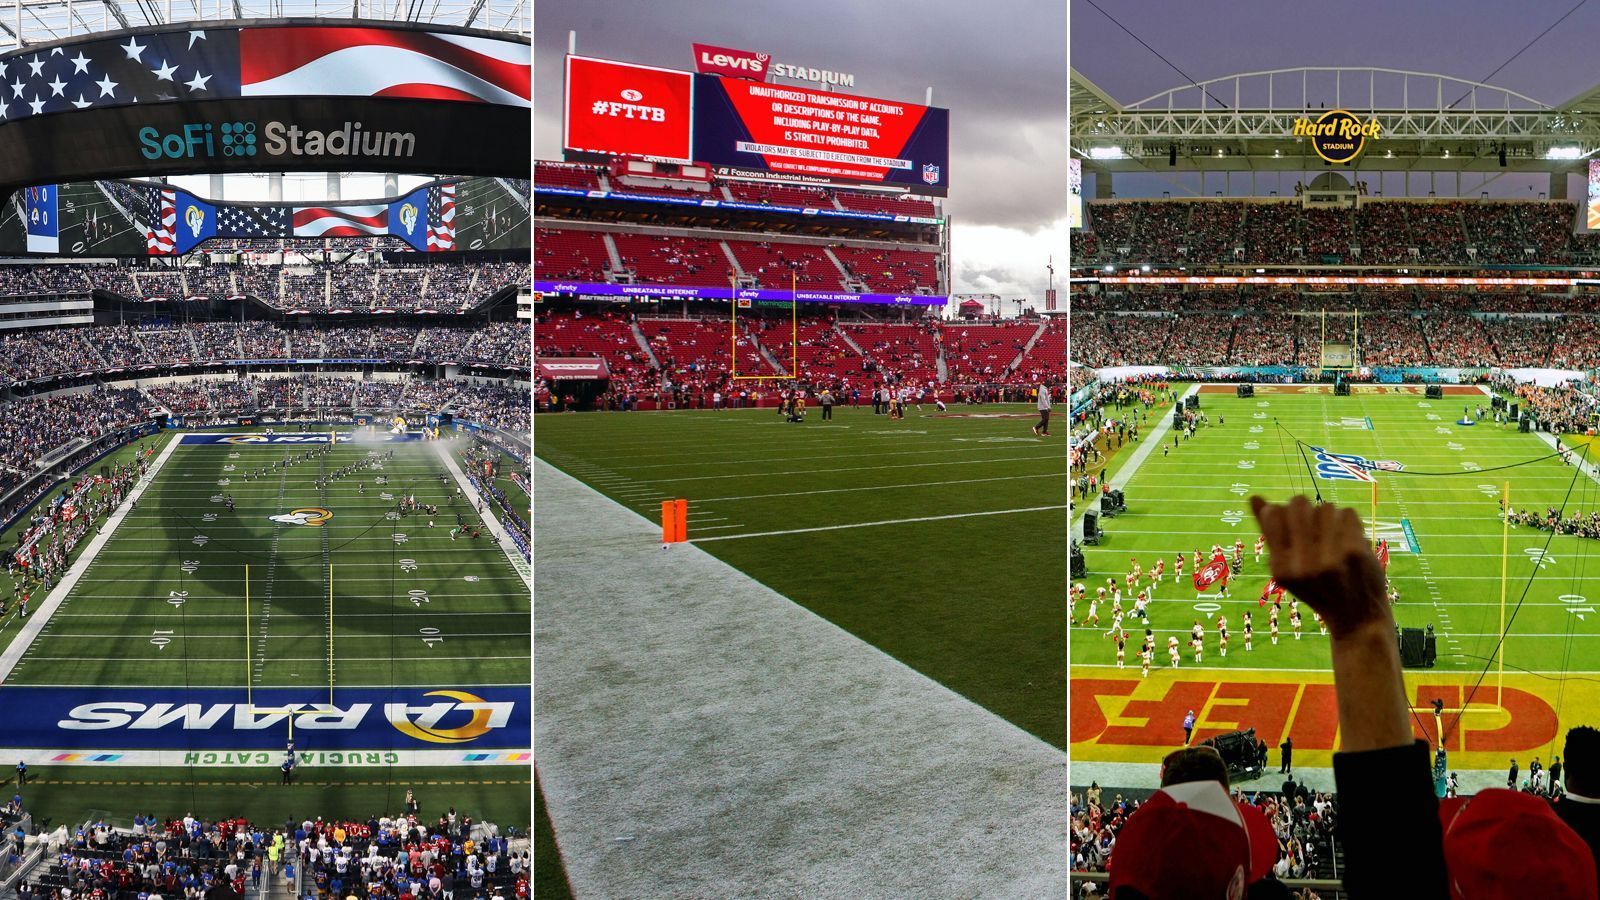 <strong>NFL: Die Gastgeber-Städte des Super Bowls</strong><br>2025 geht es nach New Orleans, 2026 nach Santa Clara und 2027 findet das Endspiel der NFL in Los Angeles statt. <em><strong>ran</strong></em> zeigt, in welchen Städten der Super Bowl bislang am häufigsten ausgetragen wurde. (Zukünftige Standorte einberechnet/Stand: Mai 2024)
